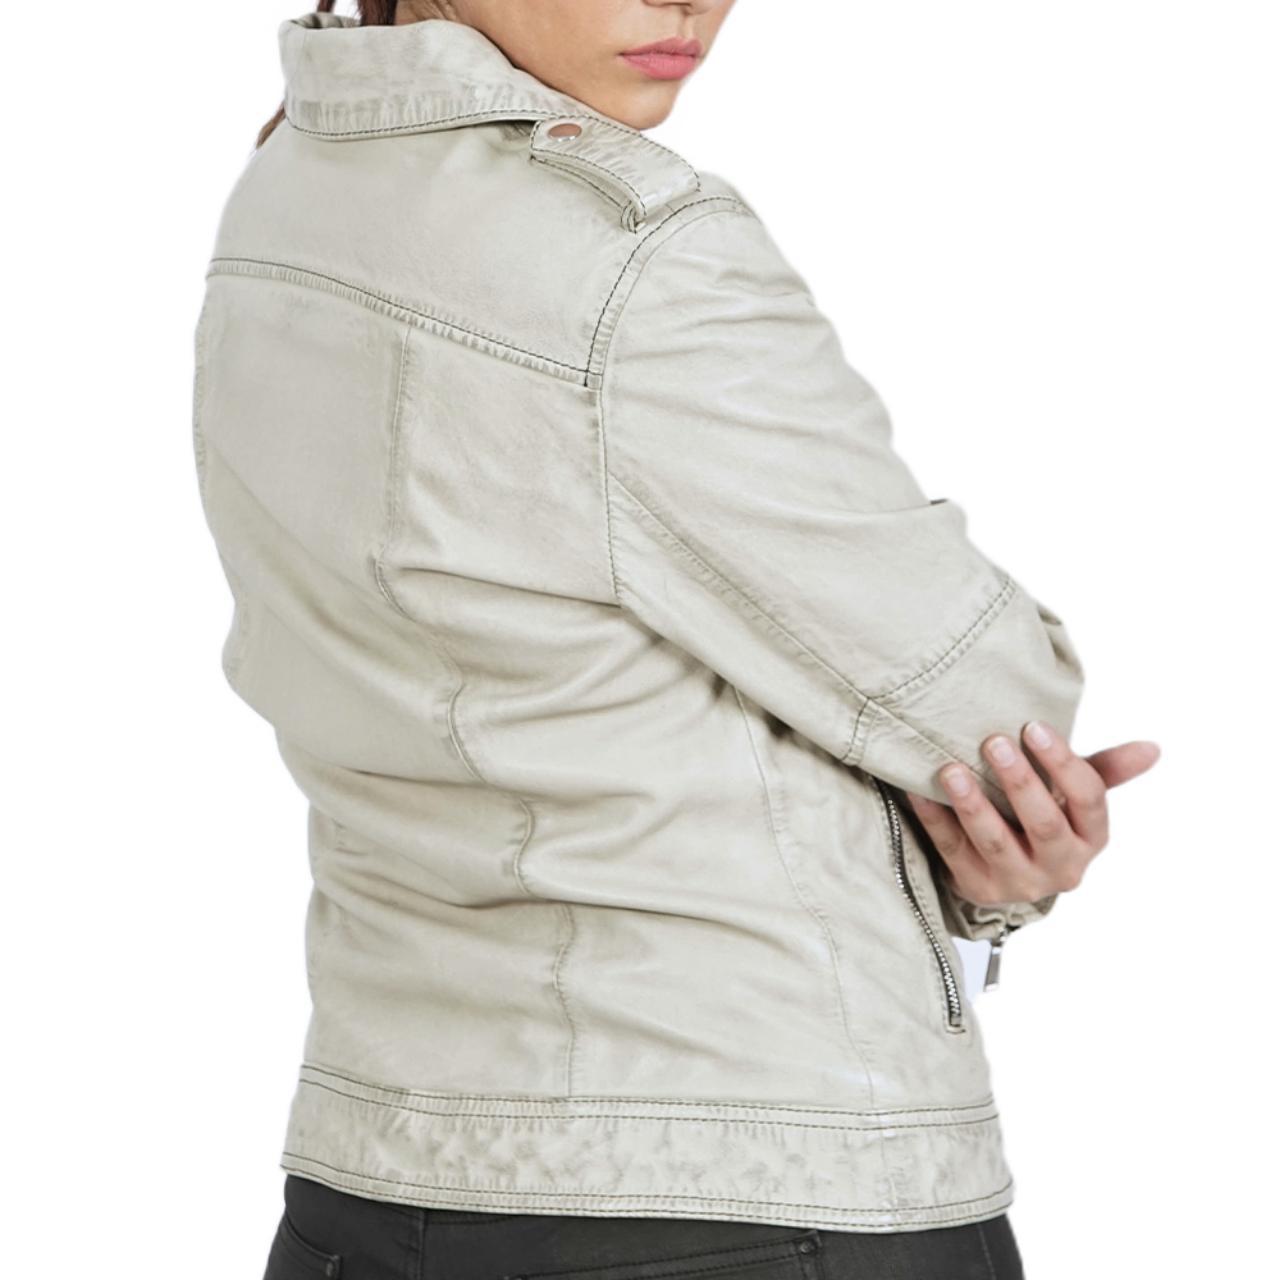 Kory Asymmetrical Zip Leather jacket